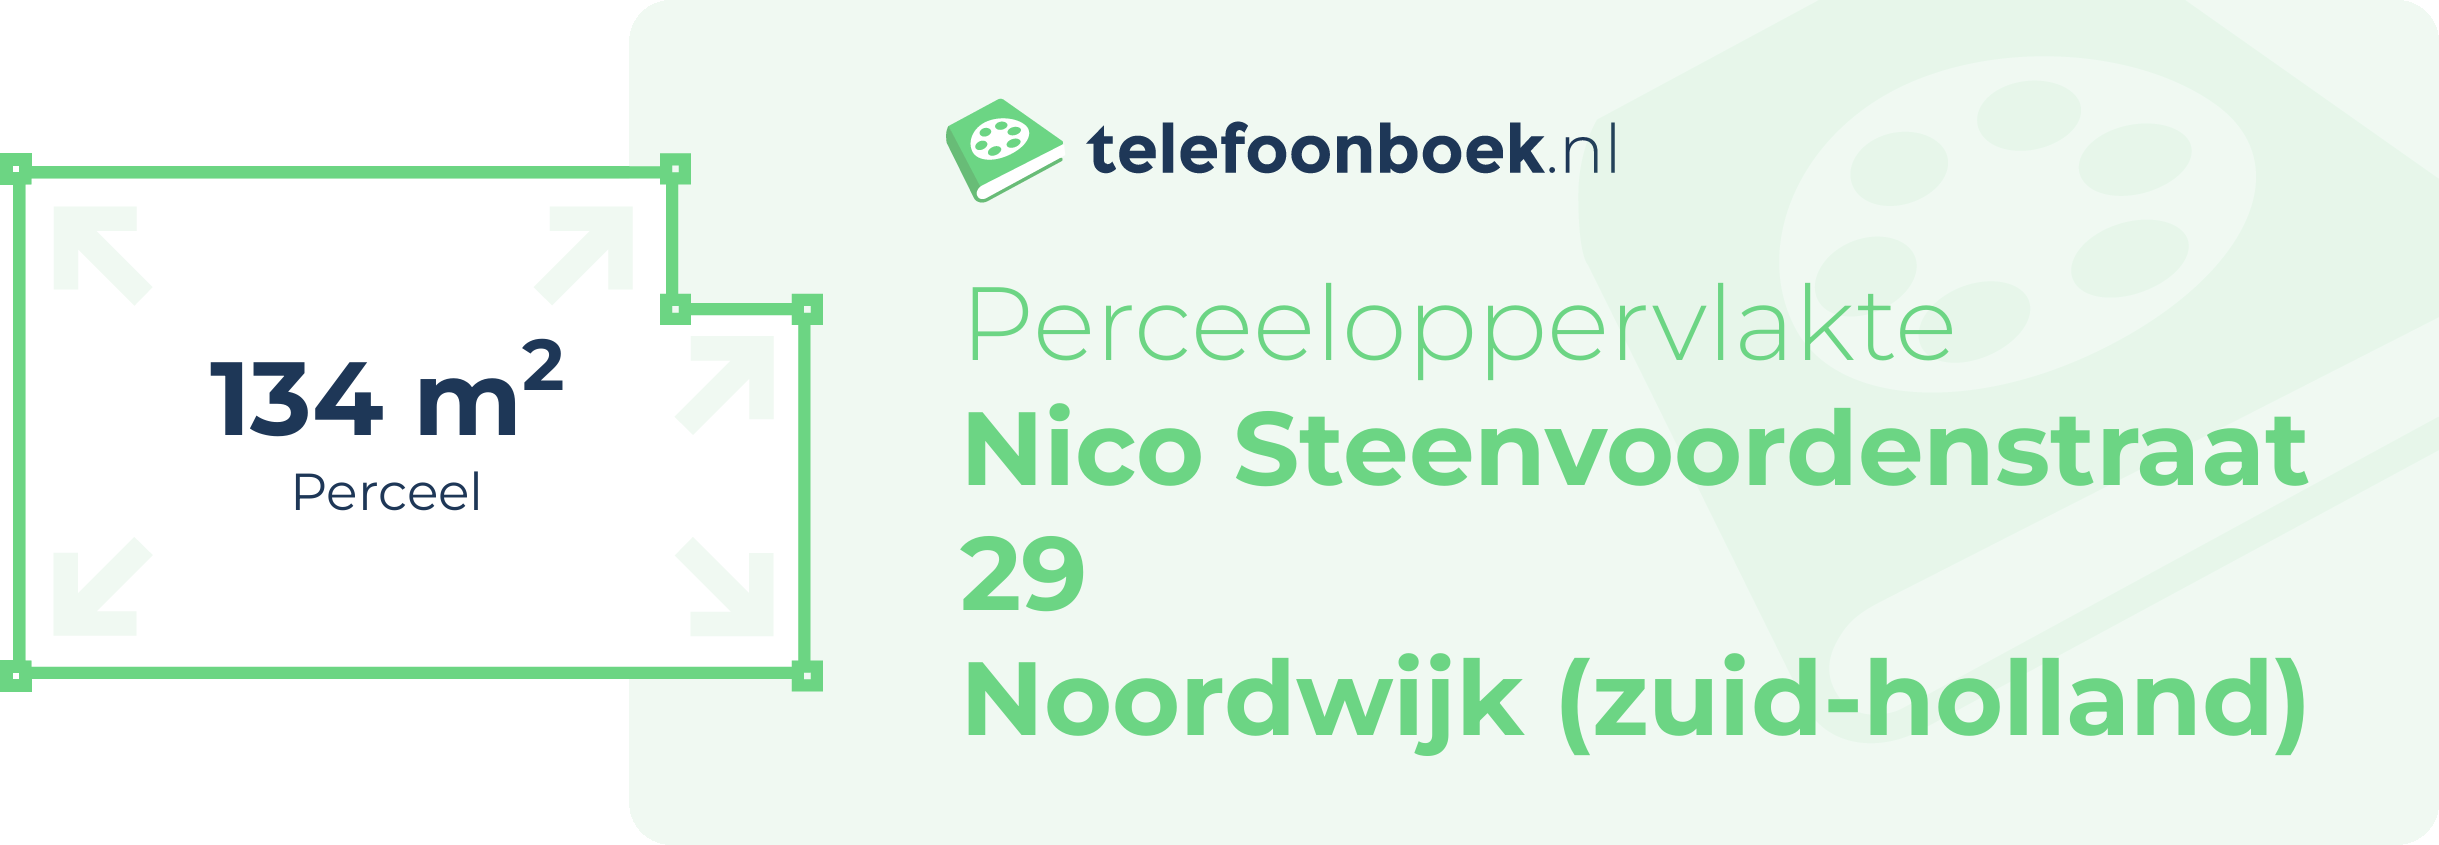 Perceeloppervlakte Nico Steenvoordenstraat 29 Noordwijk (Zuid-Holland)